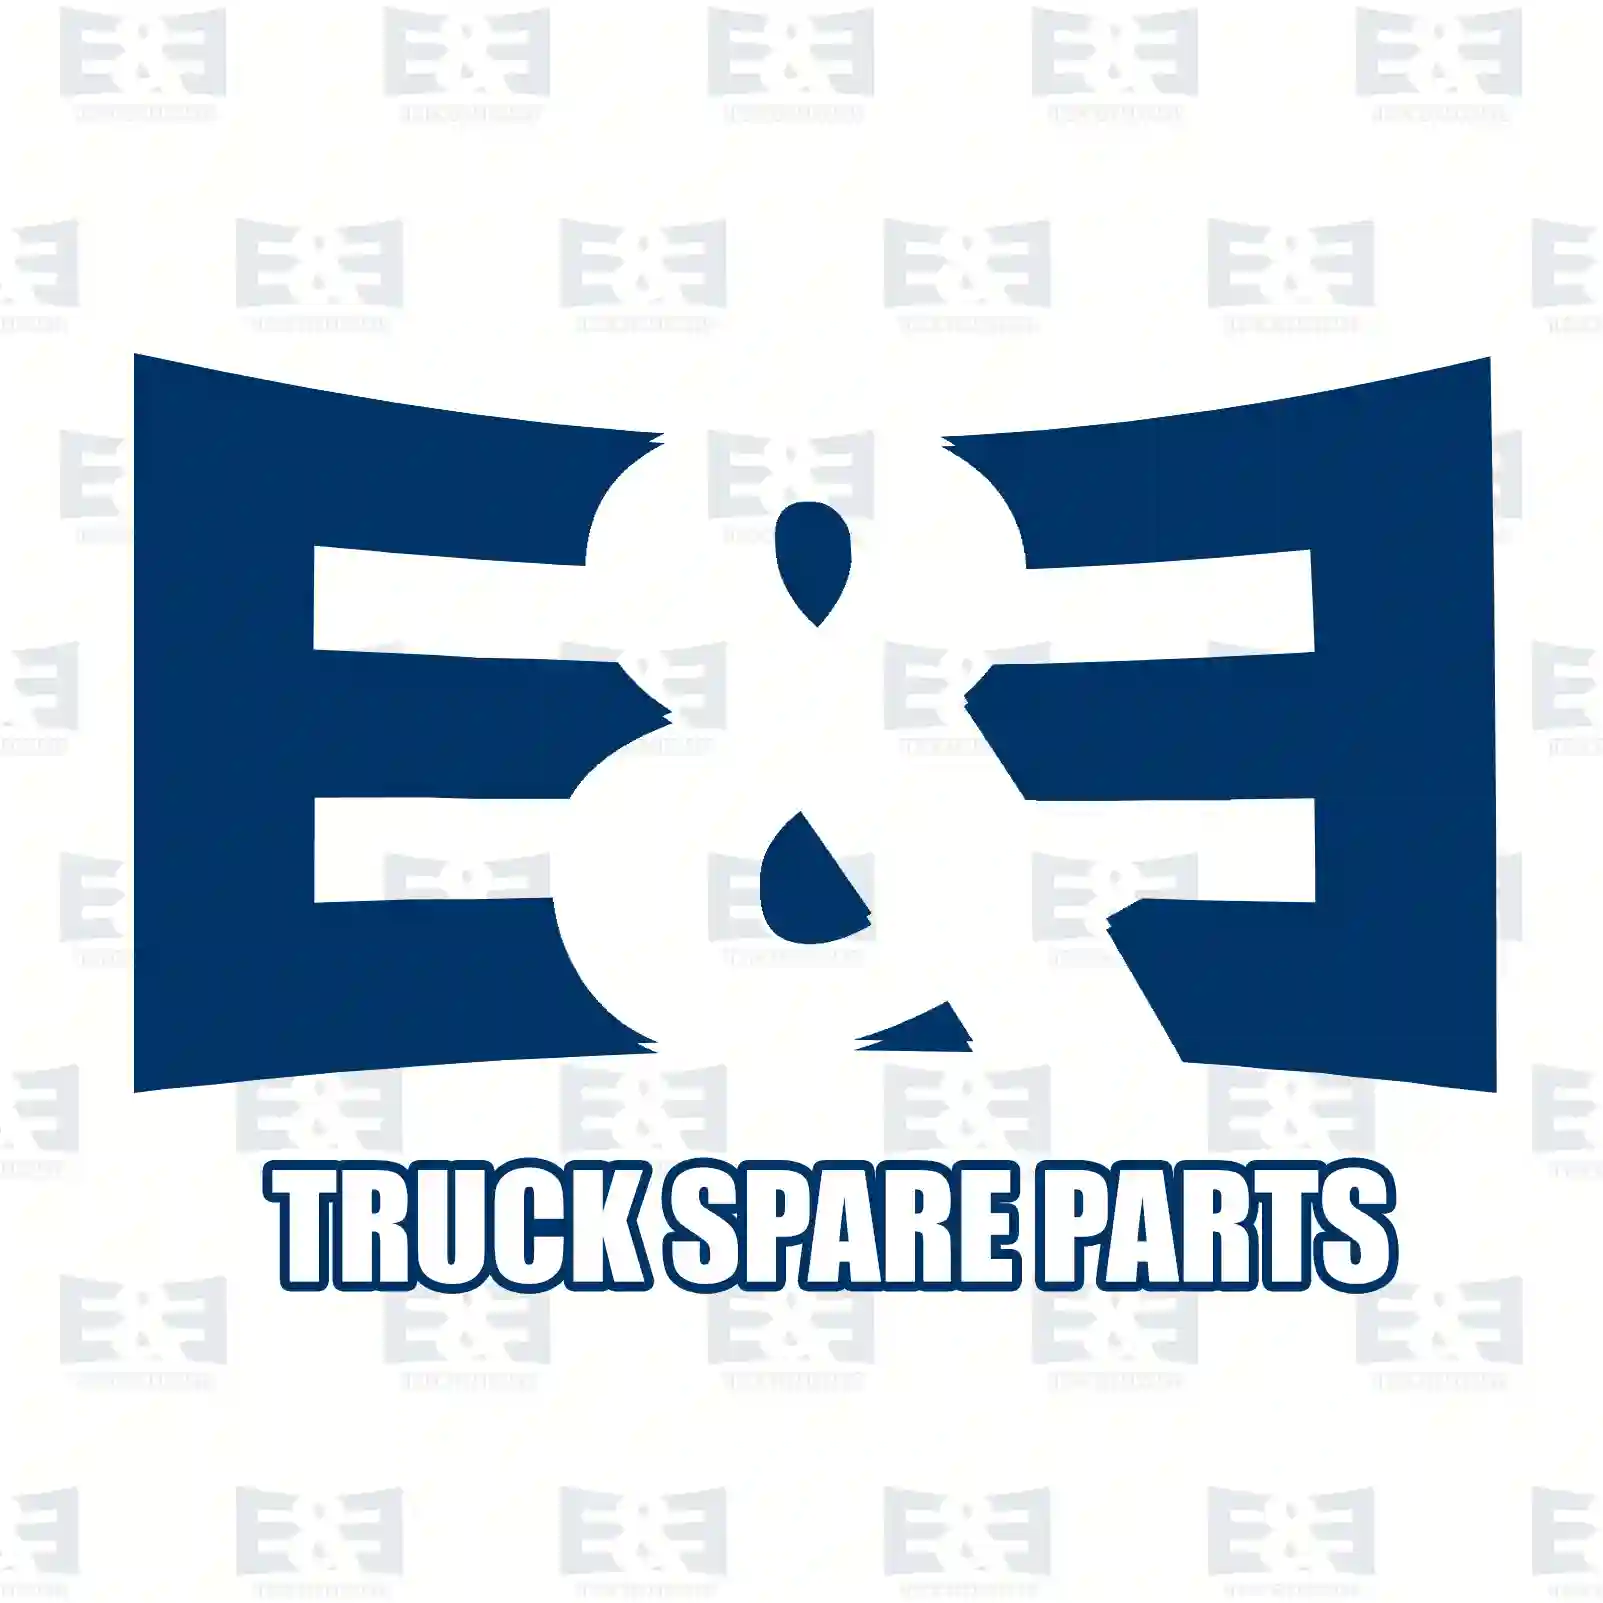 Brake disc, 2E2296336, 00004246J9, 1606308980, 4246J8, 4246J9, 4249C9, 4249H6, 1300500080, 71738910, 00004246J9, 1606308980, 4246J8, 4246J9, 4249C9, 4249H6 ||  2E2296336 E&E Truck Spare Parts | Truck Spare Parts, Auotomotive Spare Parts Brake disc, 2E2296336, 00004246J9, 1606308980, 4246J8, 4246J9, 4249C9, 4249H6, 1300500080, 71738910, 00004246J9, 1606308980, 4246J8, 4246J9, 4249C9, 4249H6 ||  2E2296336 E&E Truck Spare Parts | Truck Spare Parts, Auotomotive Spare Parts